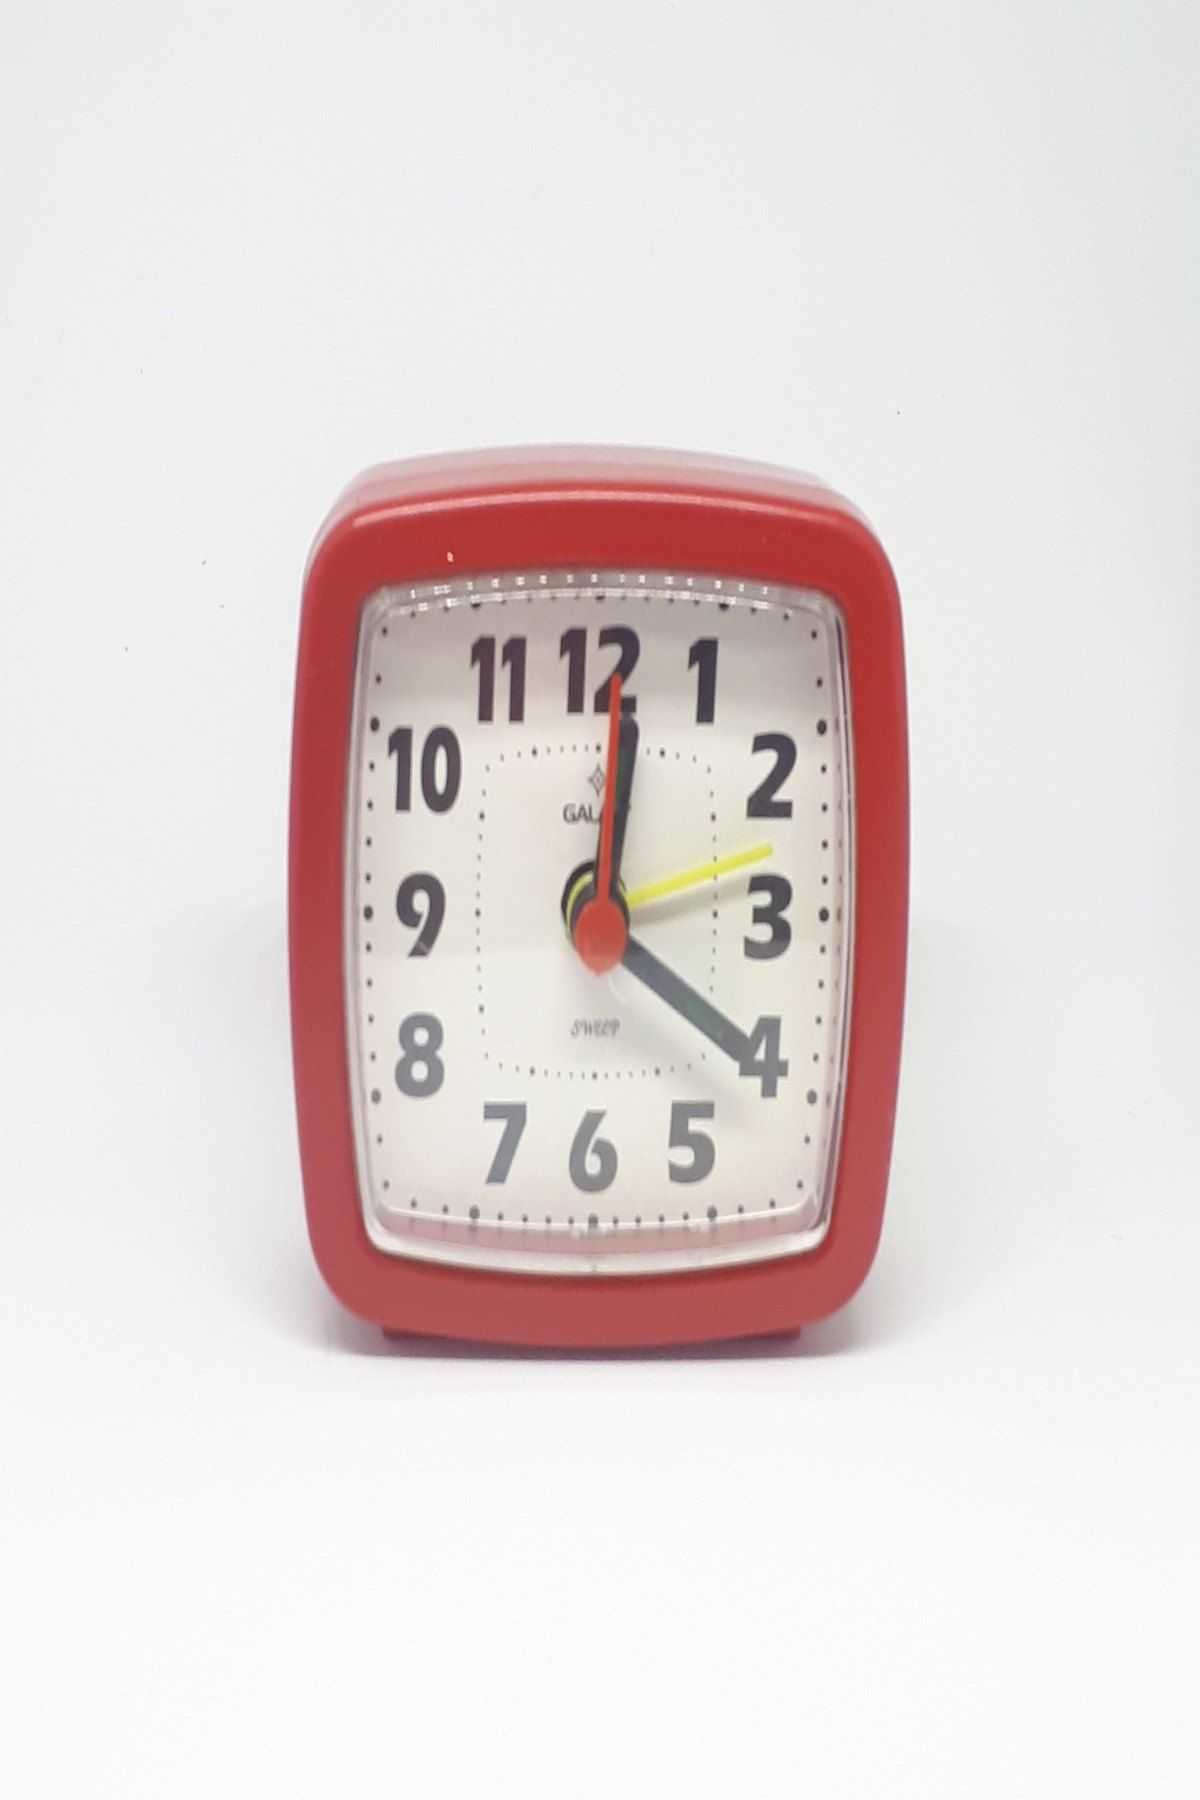 Kırmızı Renkli Mini Masa Saati Sessiz Akar Saniye